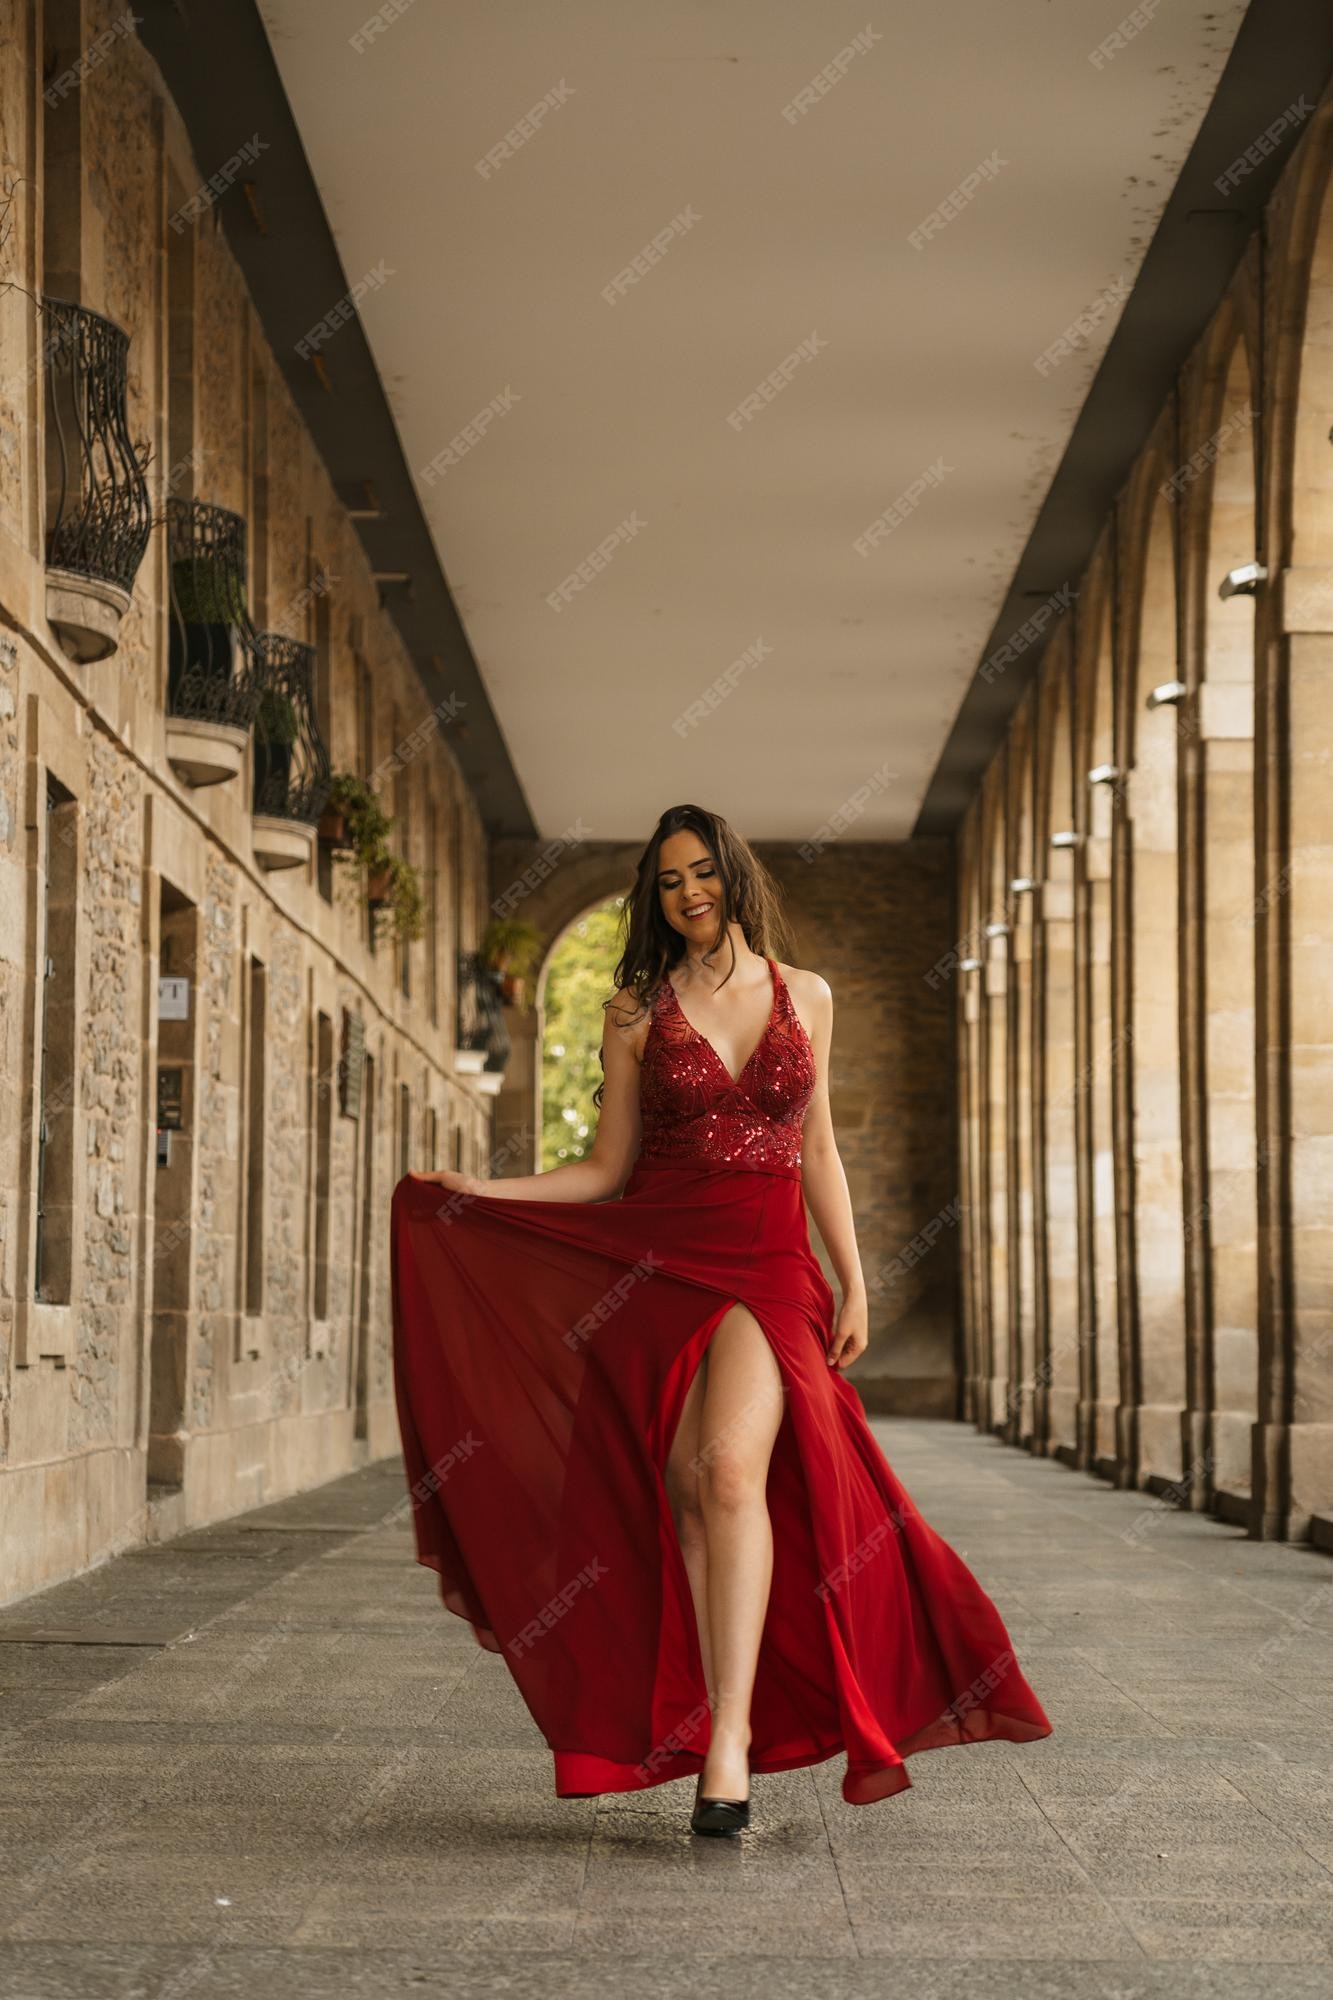 Imágenes de Vestido Rojo - Descarga gratuita en